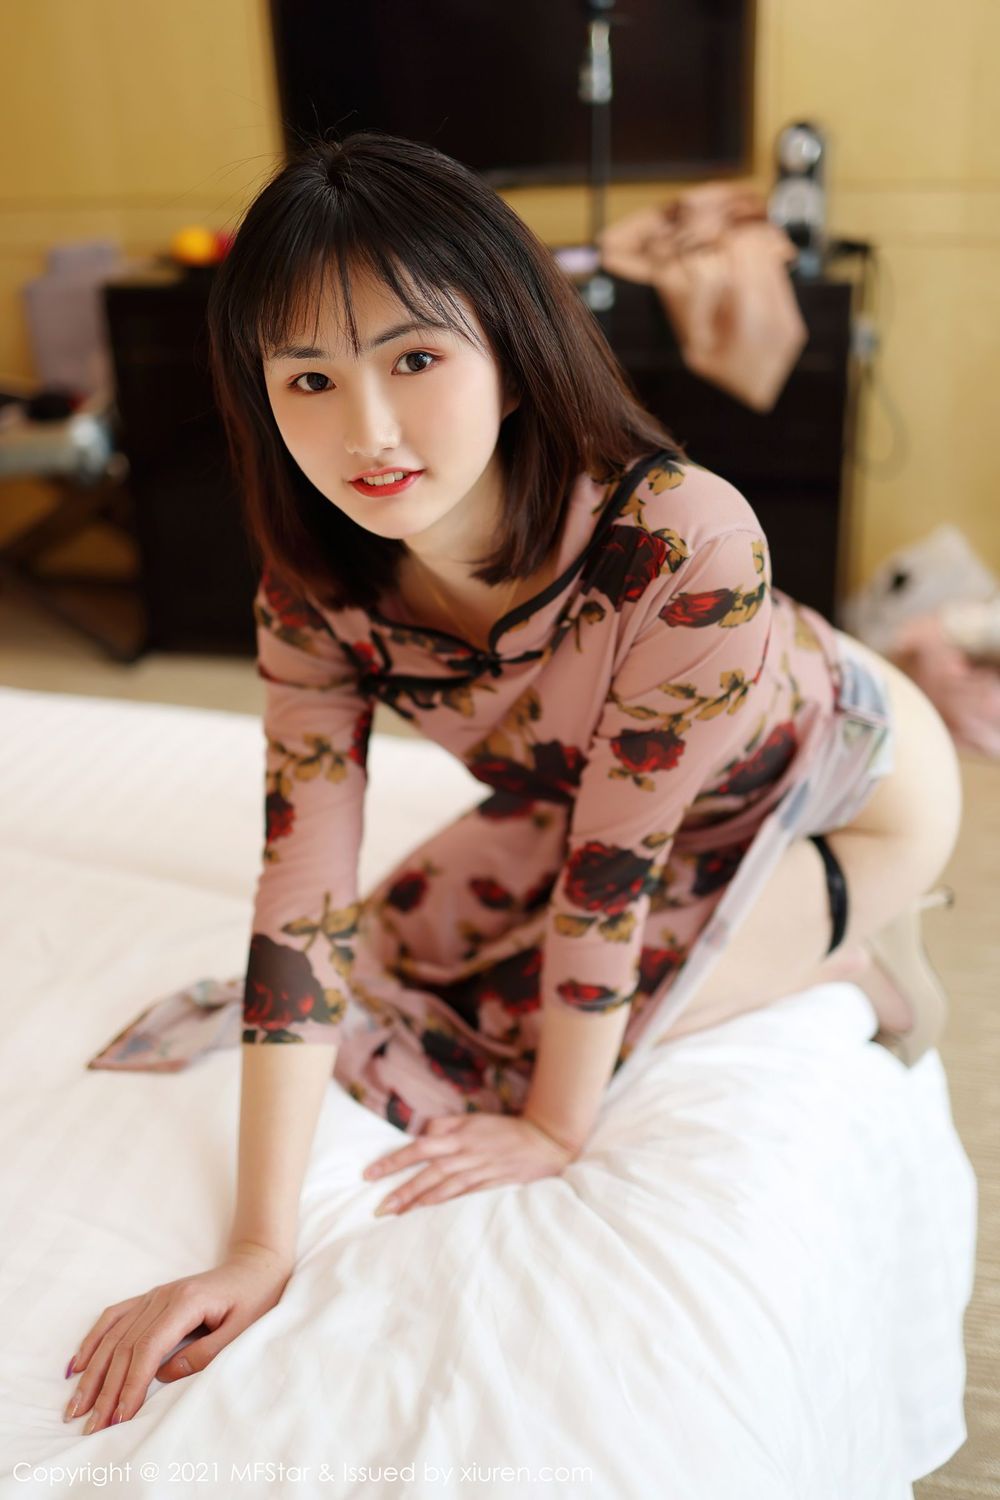 新人模特墨韩巡礼古典旗袍修长美腿系列首套写真